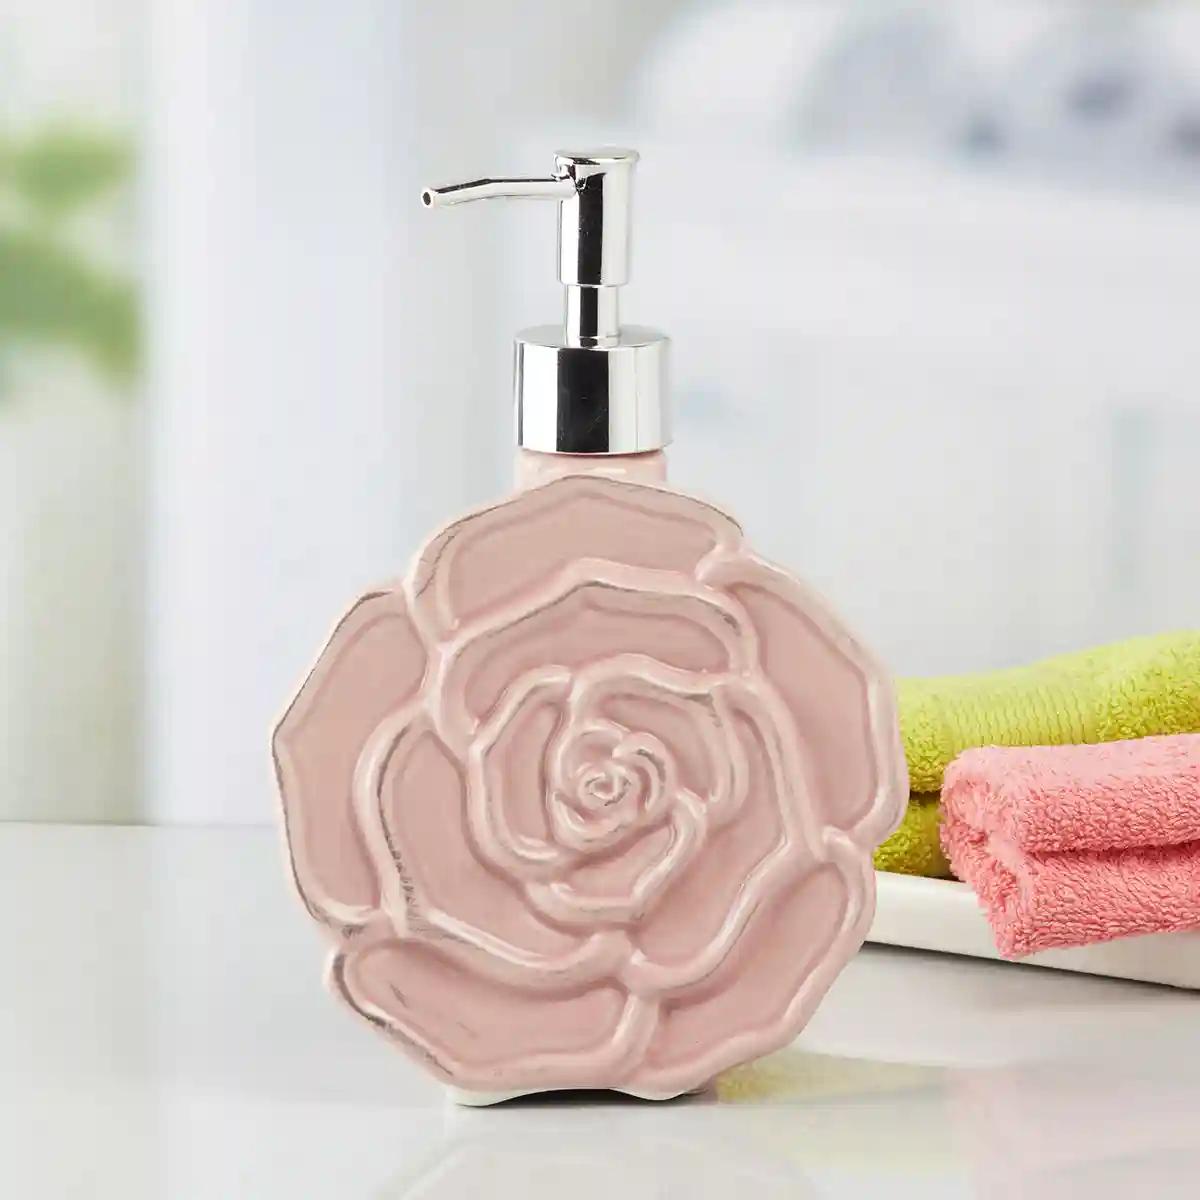 Kookee Ceramic Soap Dispenser for Bathroom handwash, refillable pump bottle for Kitchen hand wash basin, Set of 4 - Multicolor (10131)